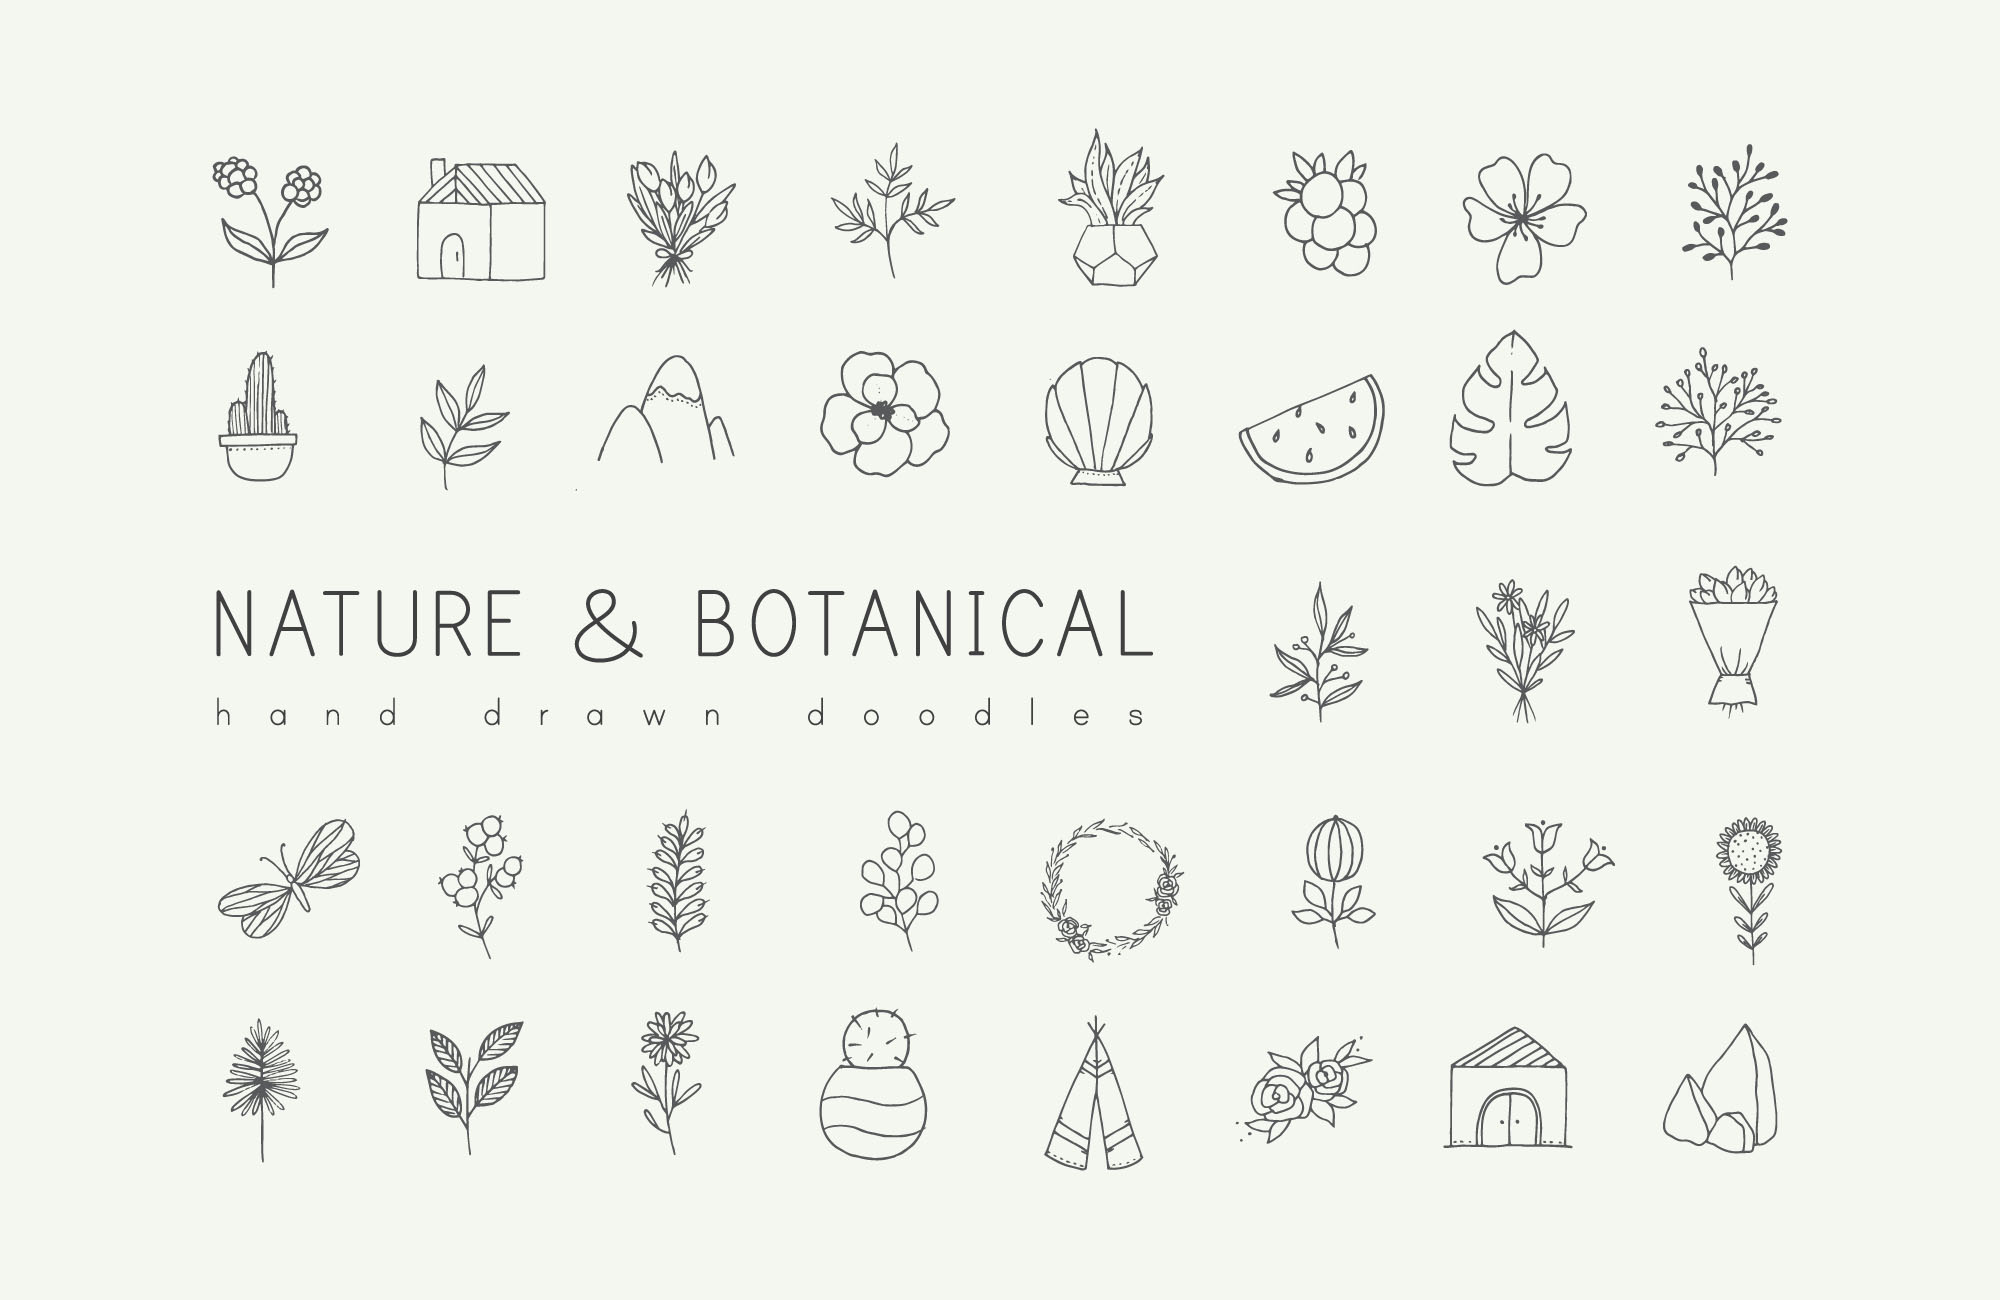 自然与植物手绘涂鸦矢量图形设计素材 Nature and Botanical Hand Drawn Doodles插图